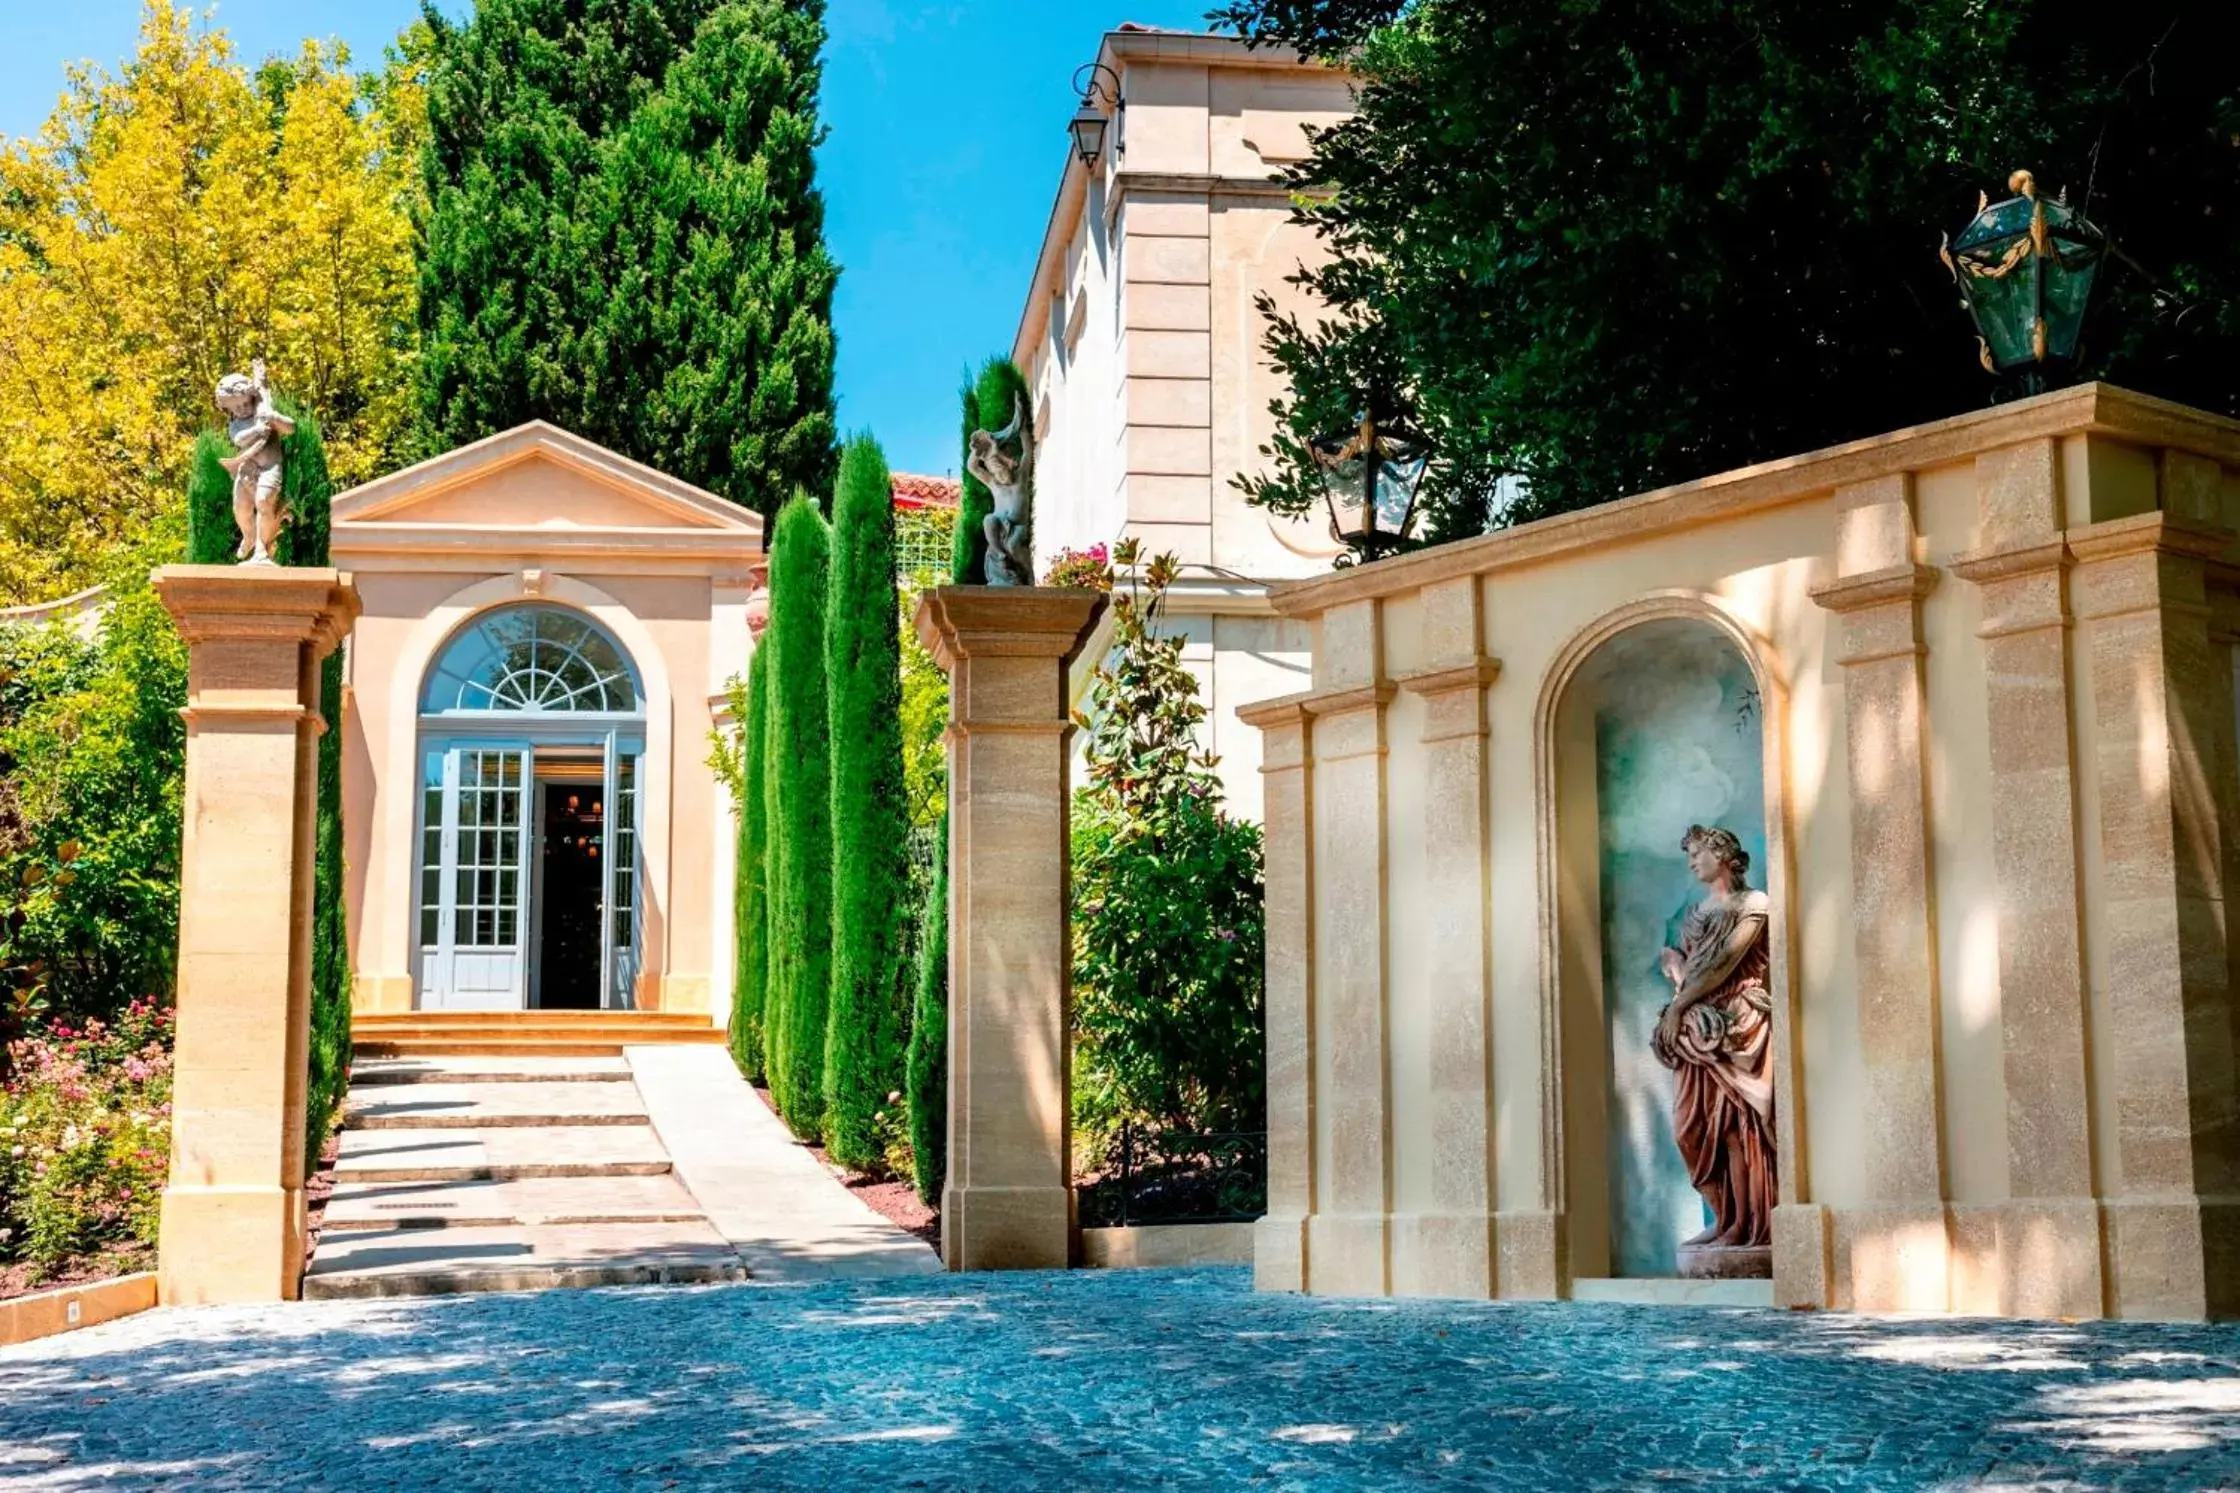 Facade/entrance in Villa Gallici Hôtel & Spa